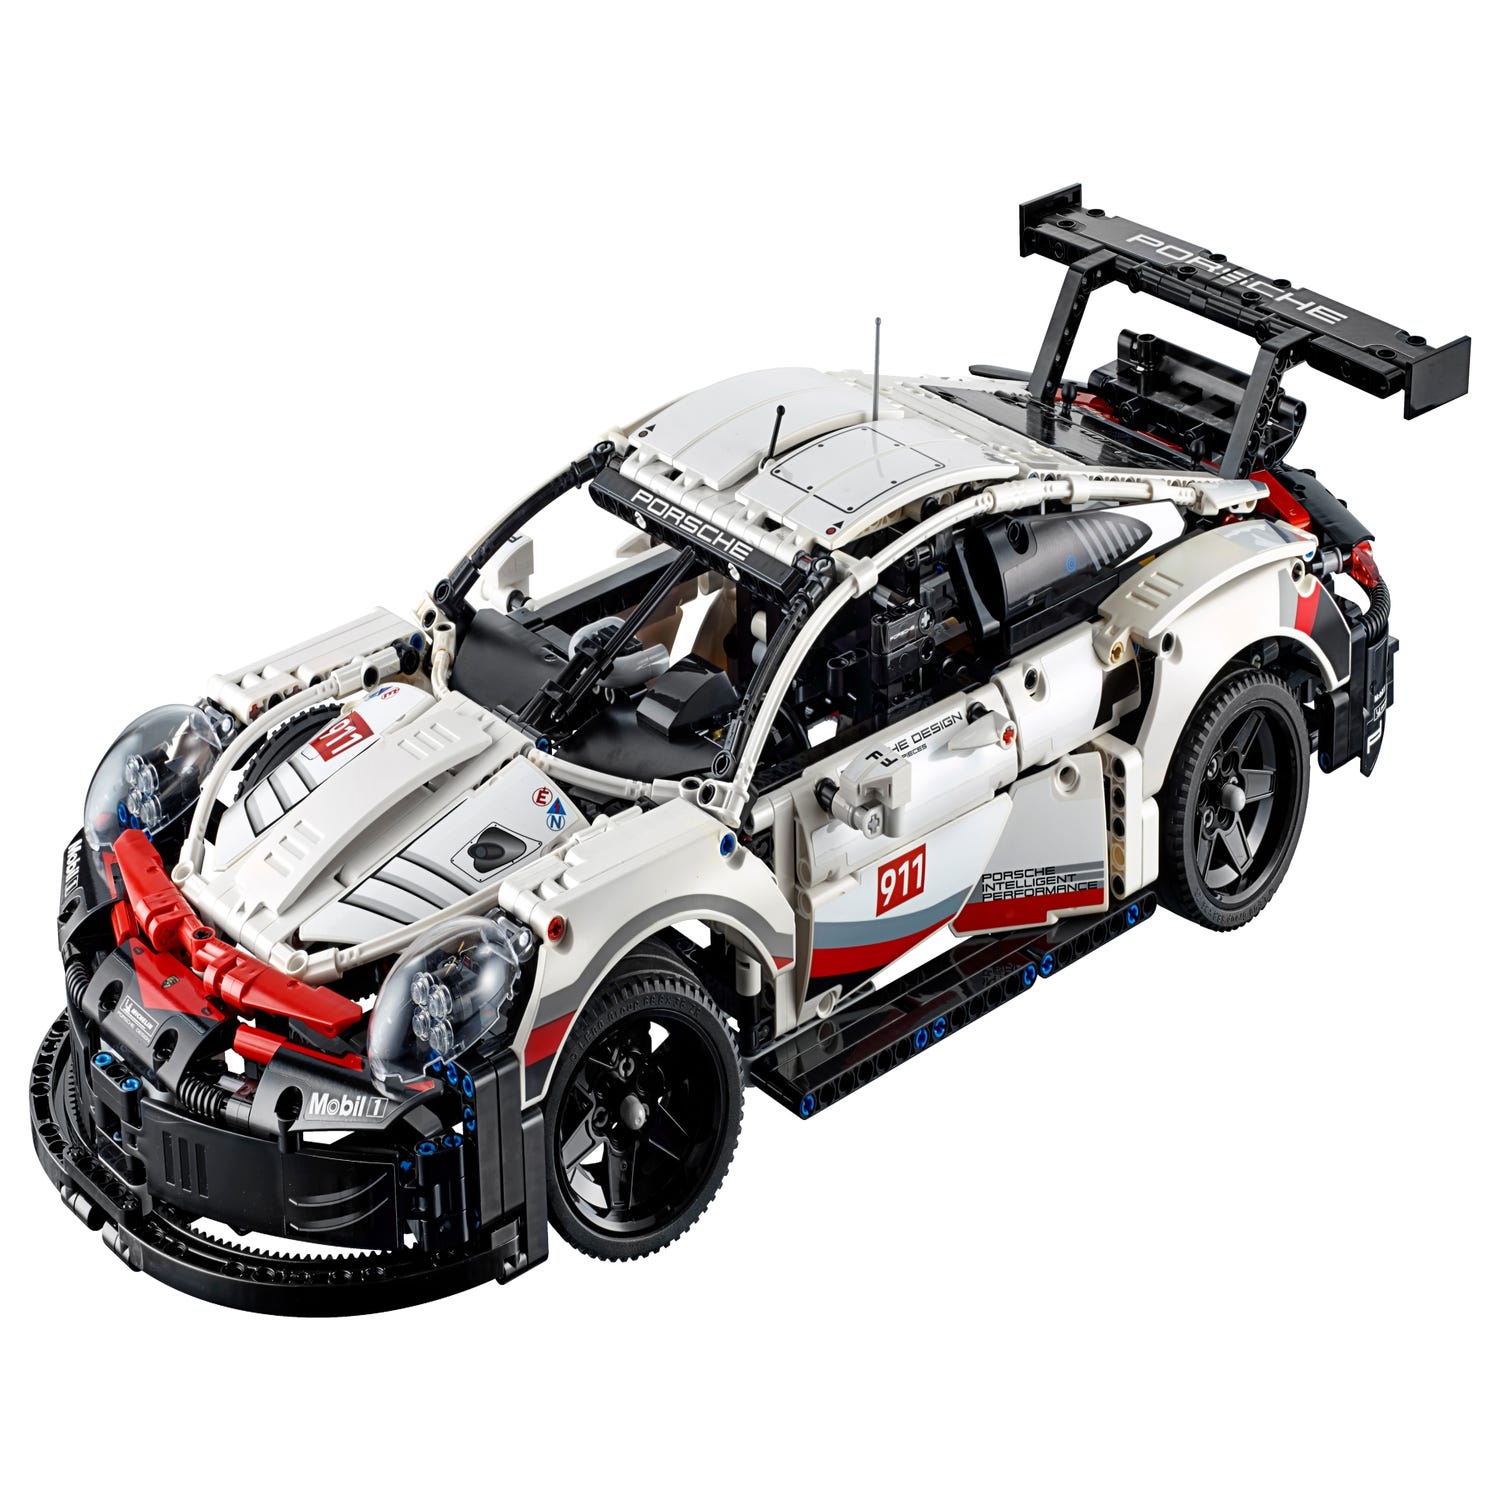 Porsche 911 Rsr Lego